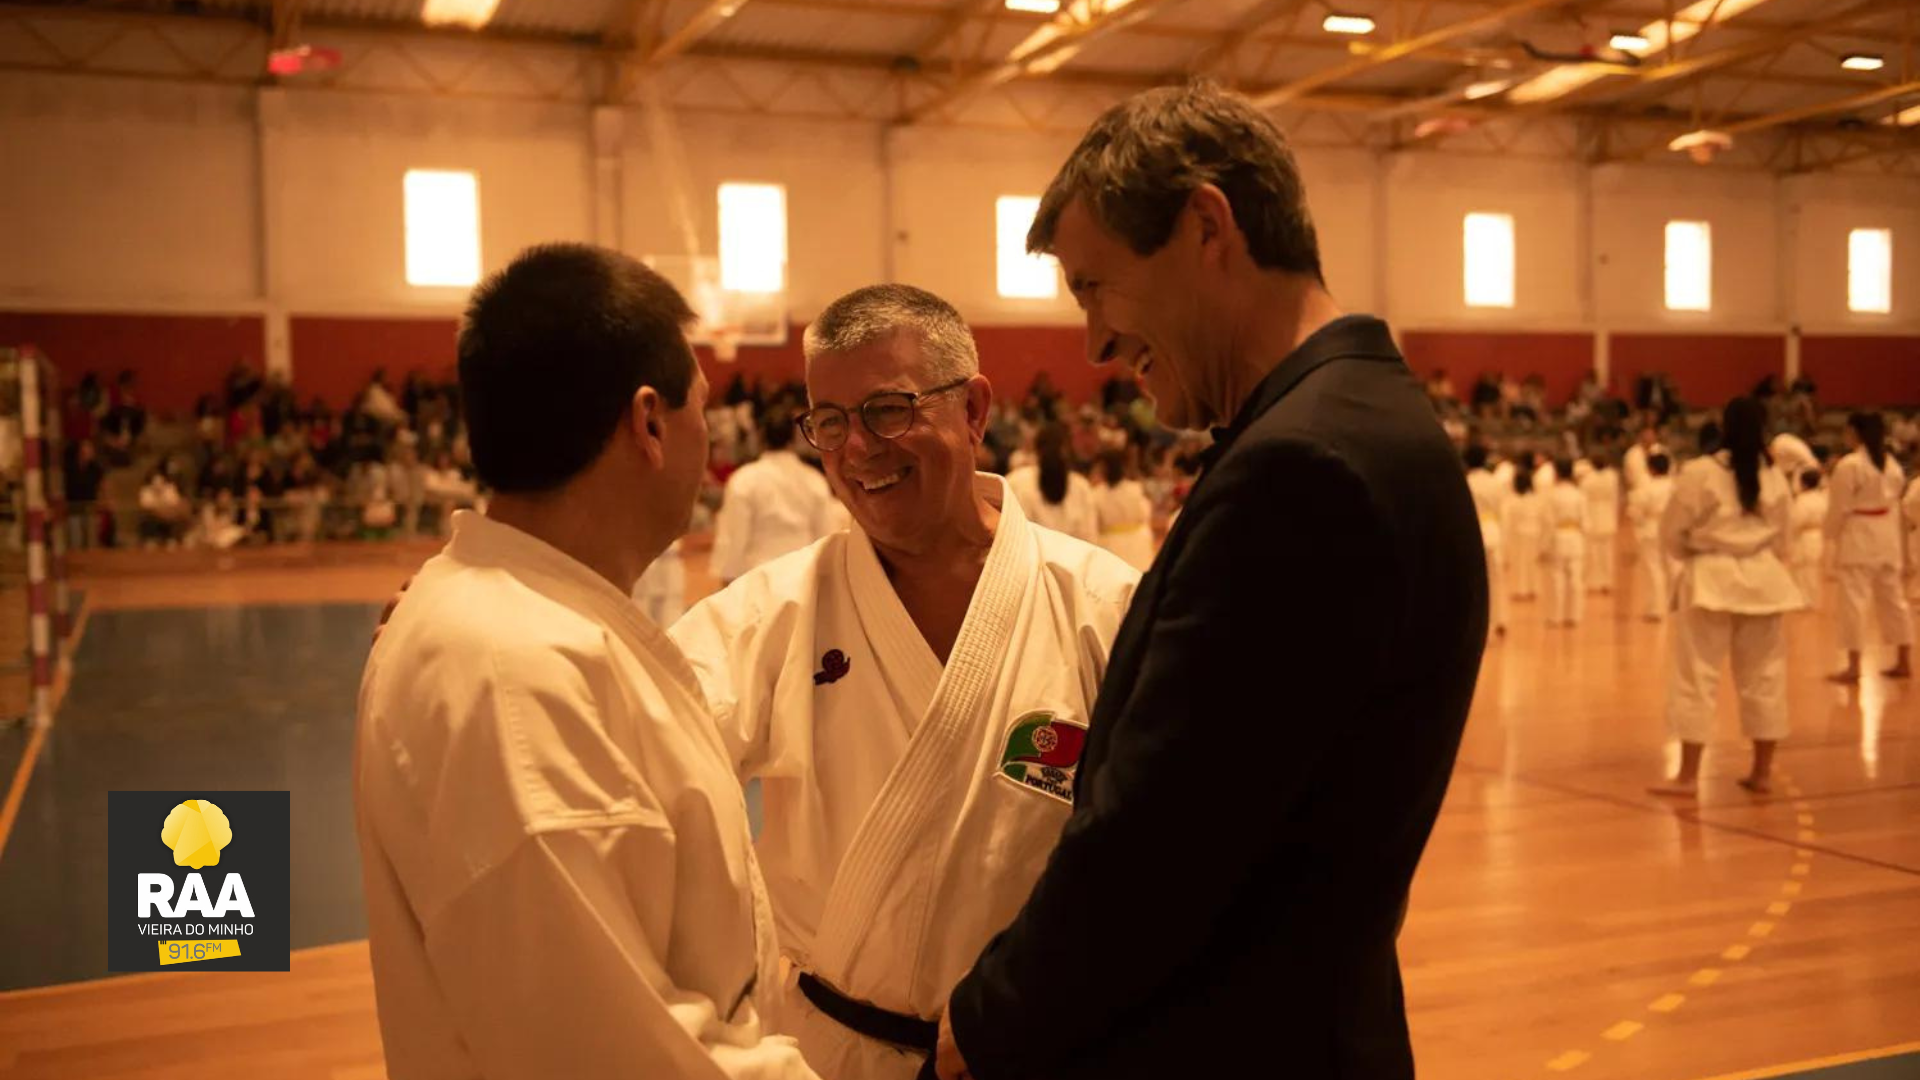 Celorico de Basto passed the annual internship of the Portuguese core of karate ⋆ RADIO ALTO AVE